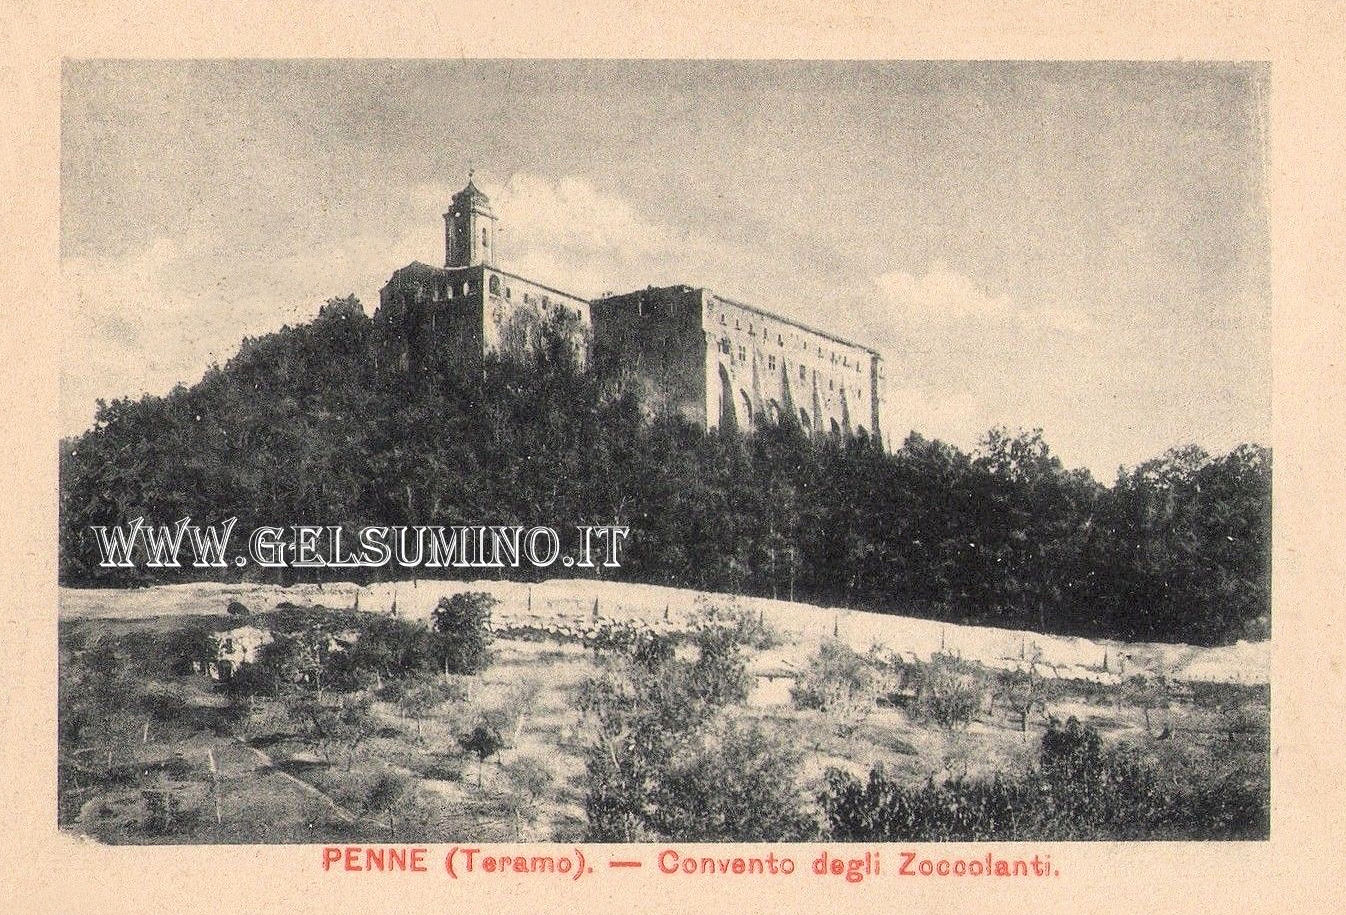 Colleromano - Cartolina primi anni 1900